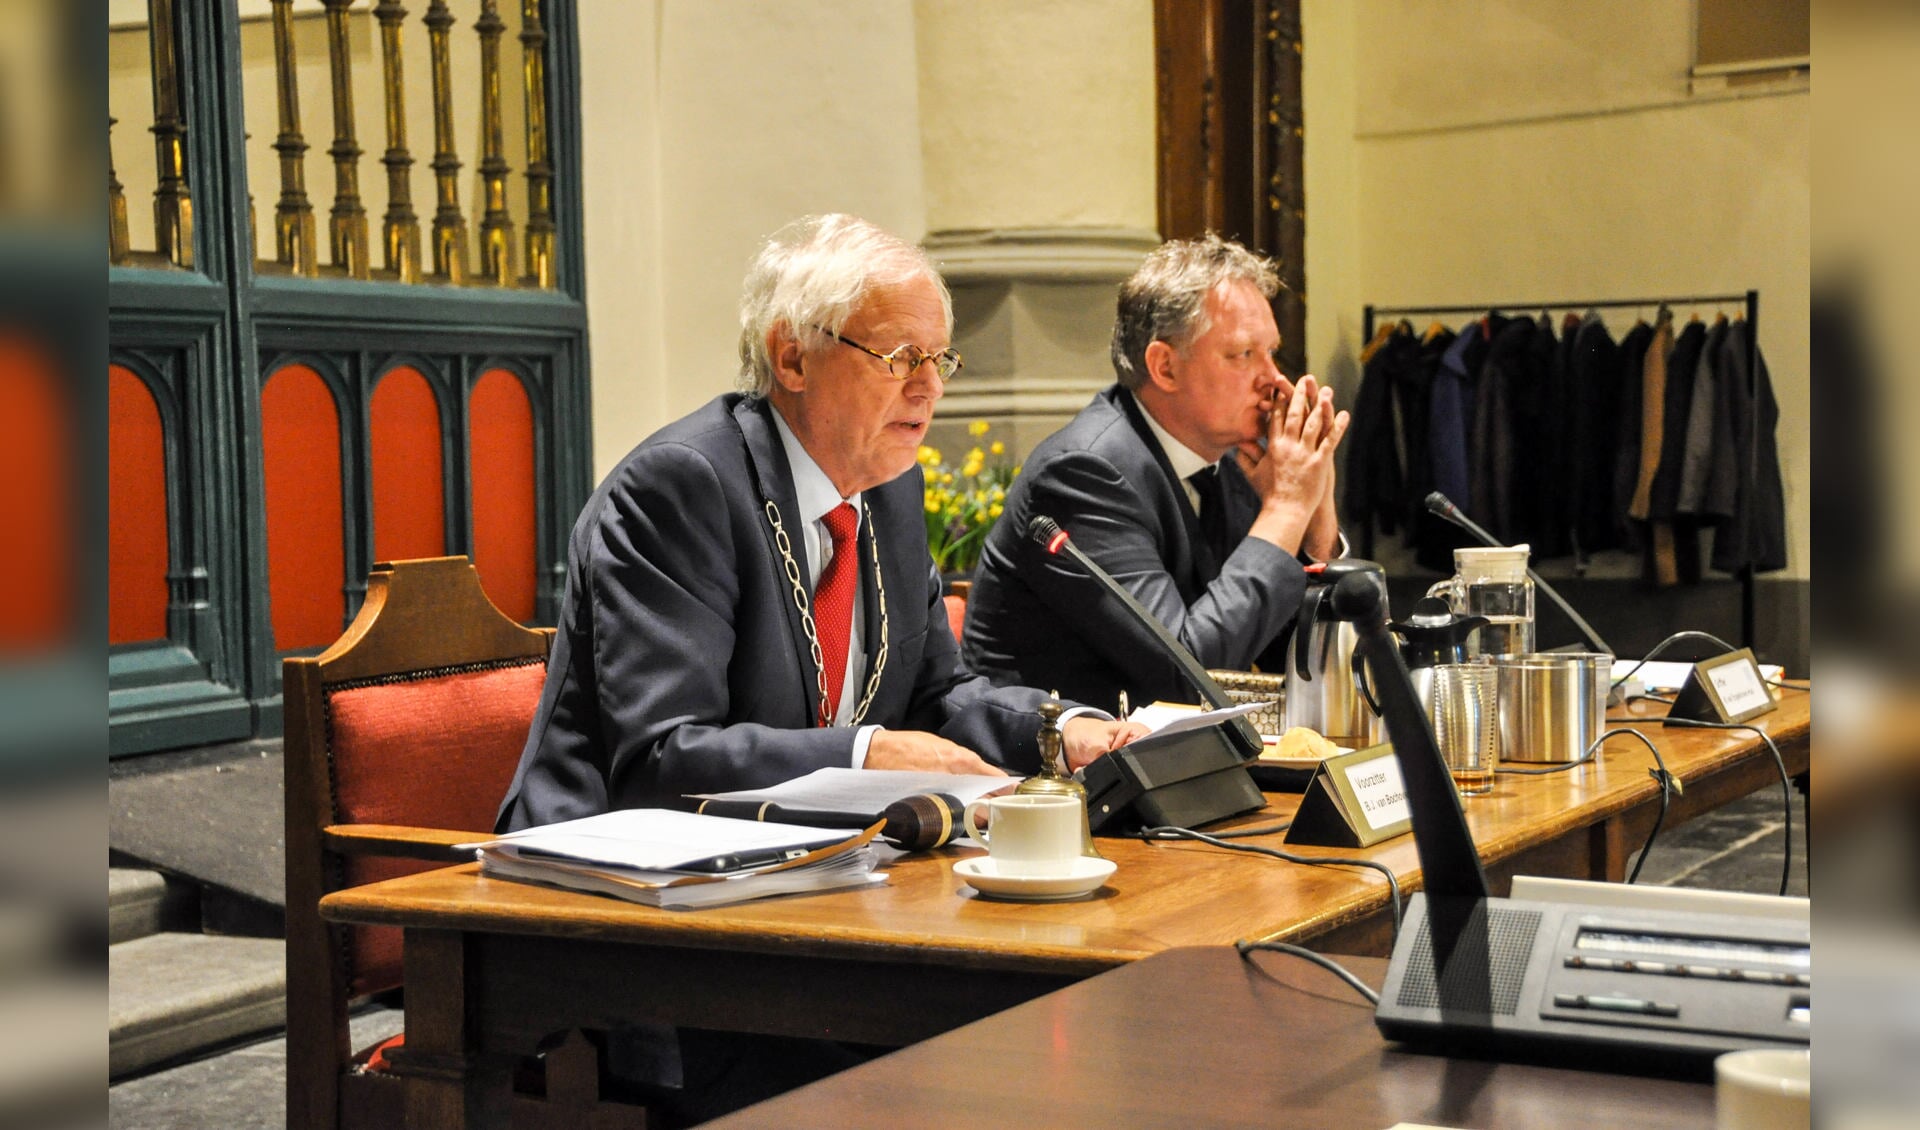 Burgemeester Van Bochove roept de inwoners van Weesp op nu weer gezamenlijk op te trekken.